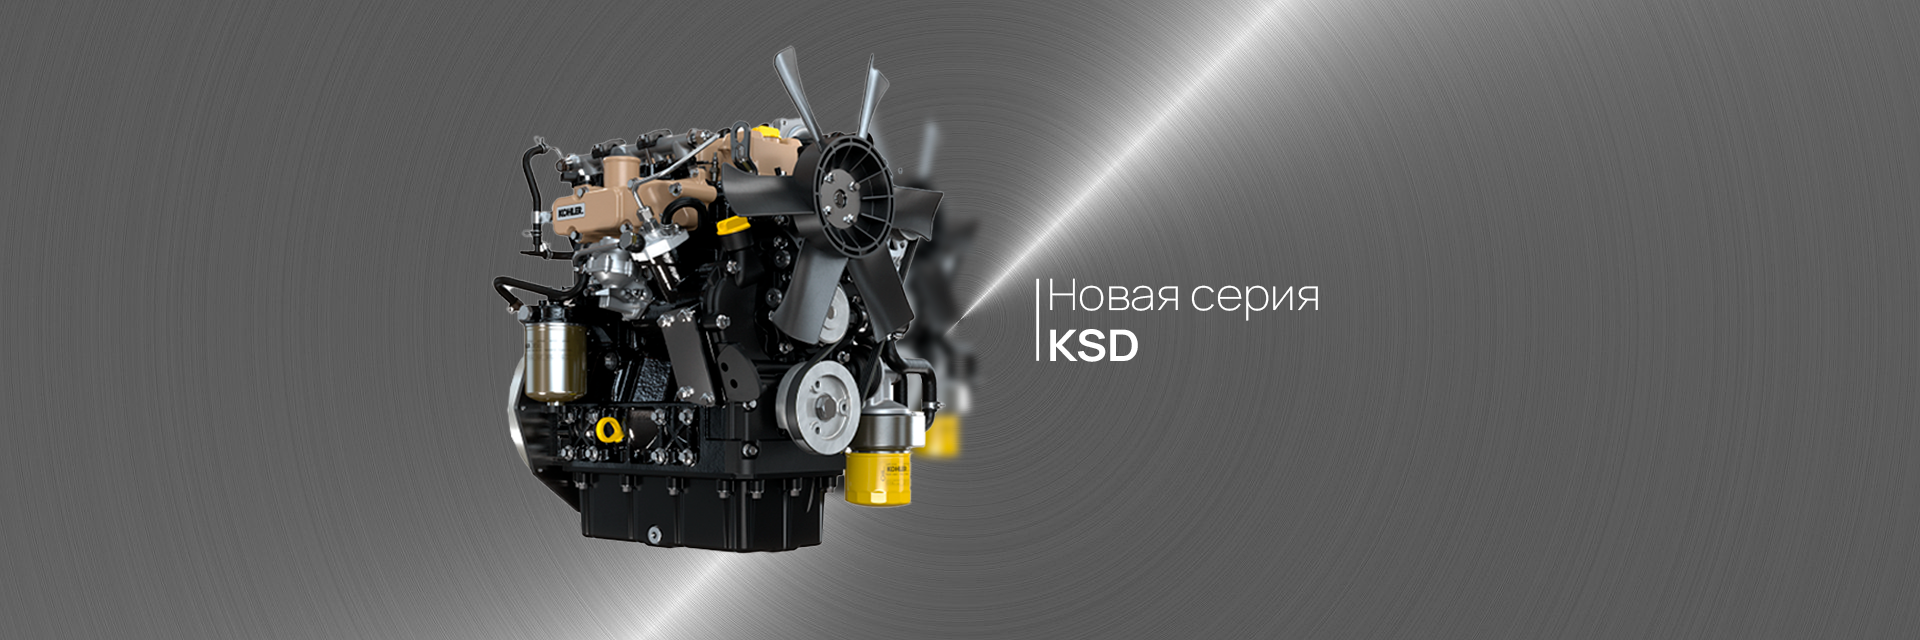 Kohler выпускает серию KSD: новое семейство двигателей